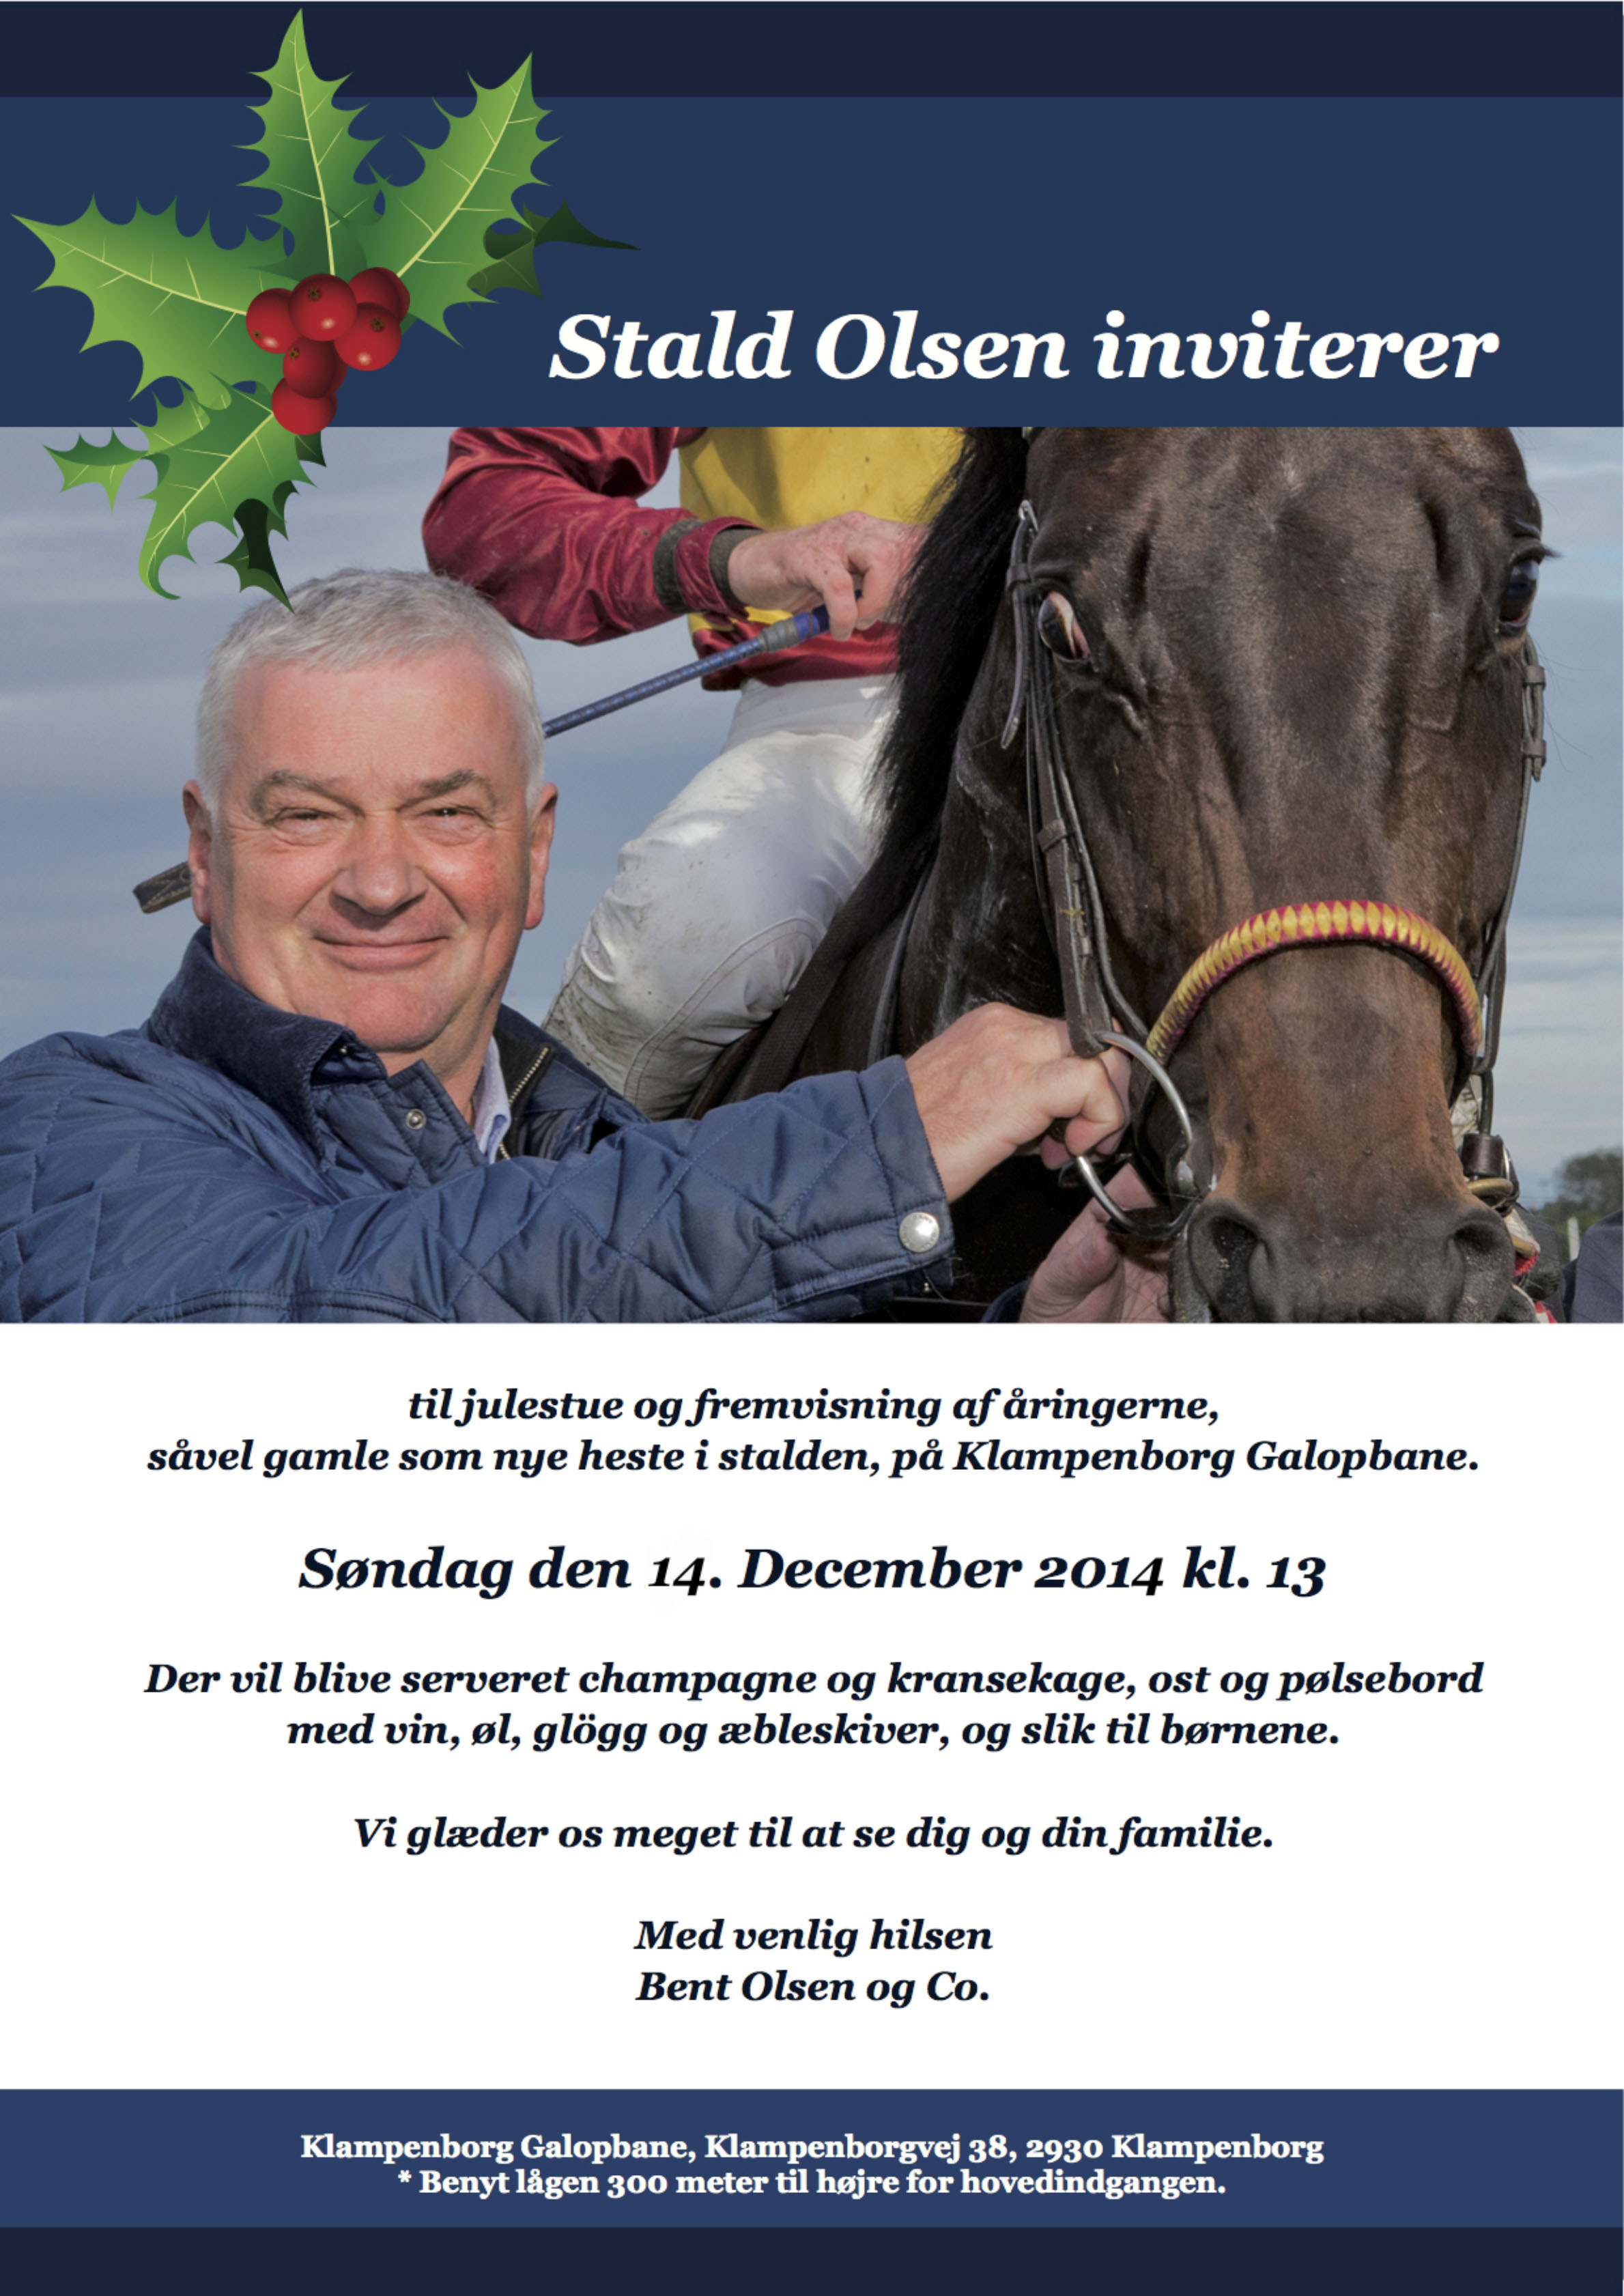 Stald Bent Olsen inviterer til julehygge og 
	fremvisning af åringerne, såvel gamle som nye heste i stalden på Klampenborg Galopbane søndag den 14. december 2014 kl. 13